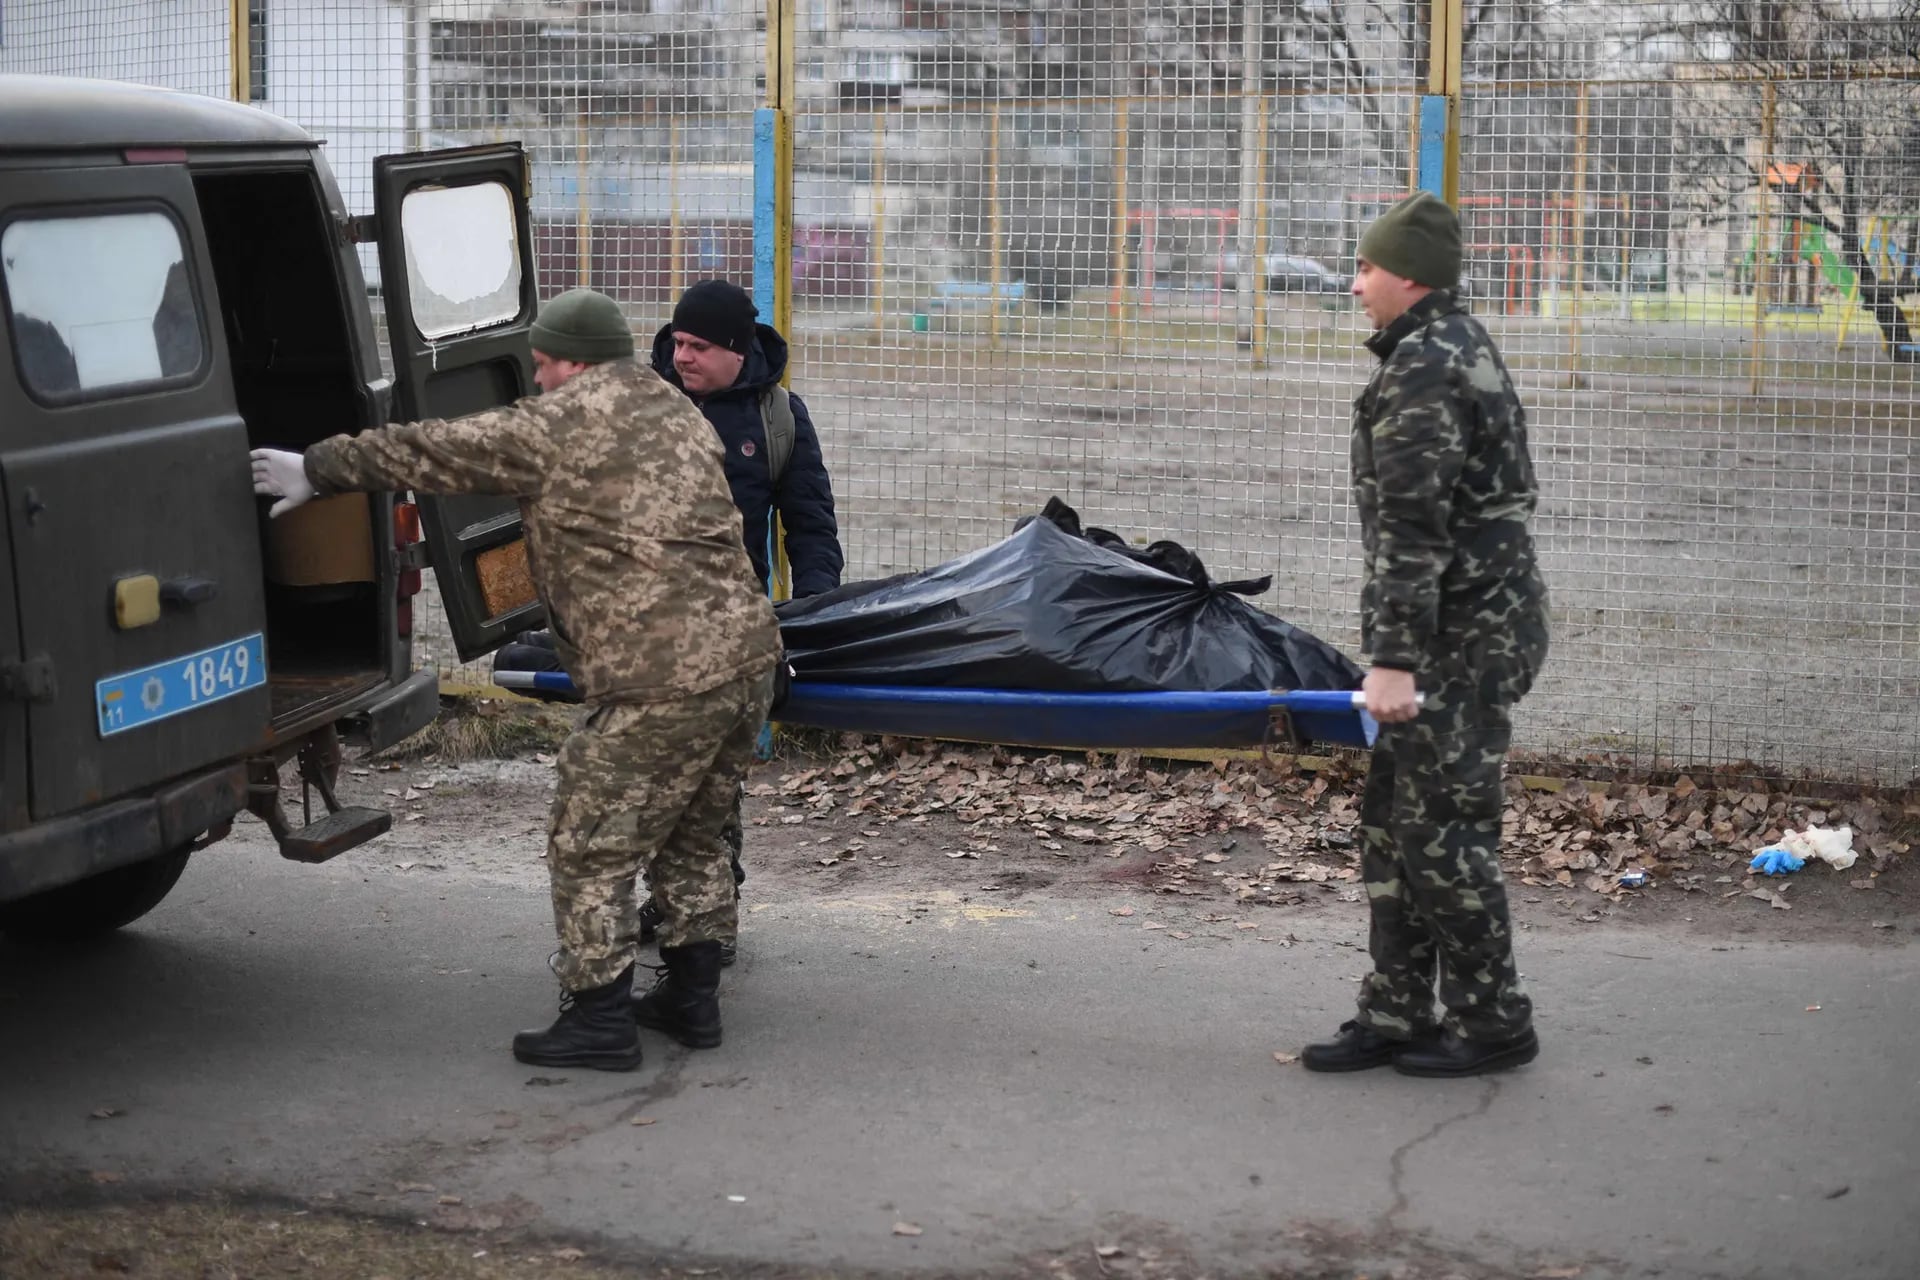 Militares uranium levanta el cuerpo un hombre que murió tras recibir un dispar, en Kiev